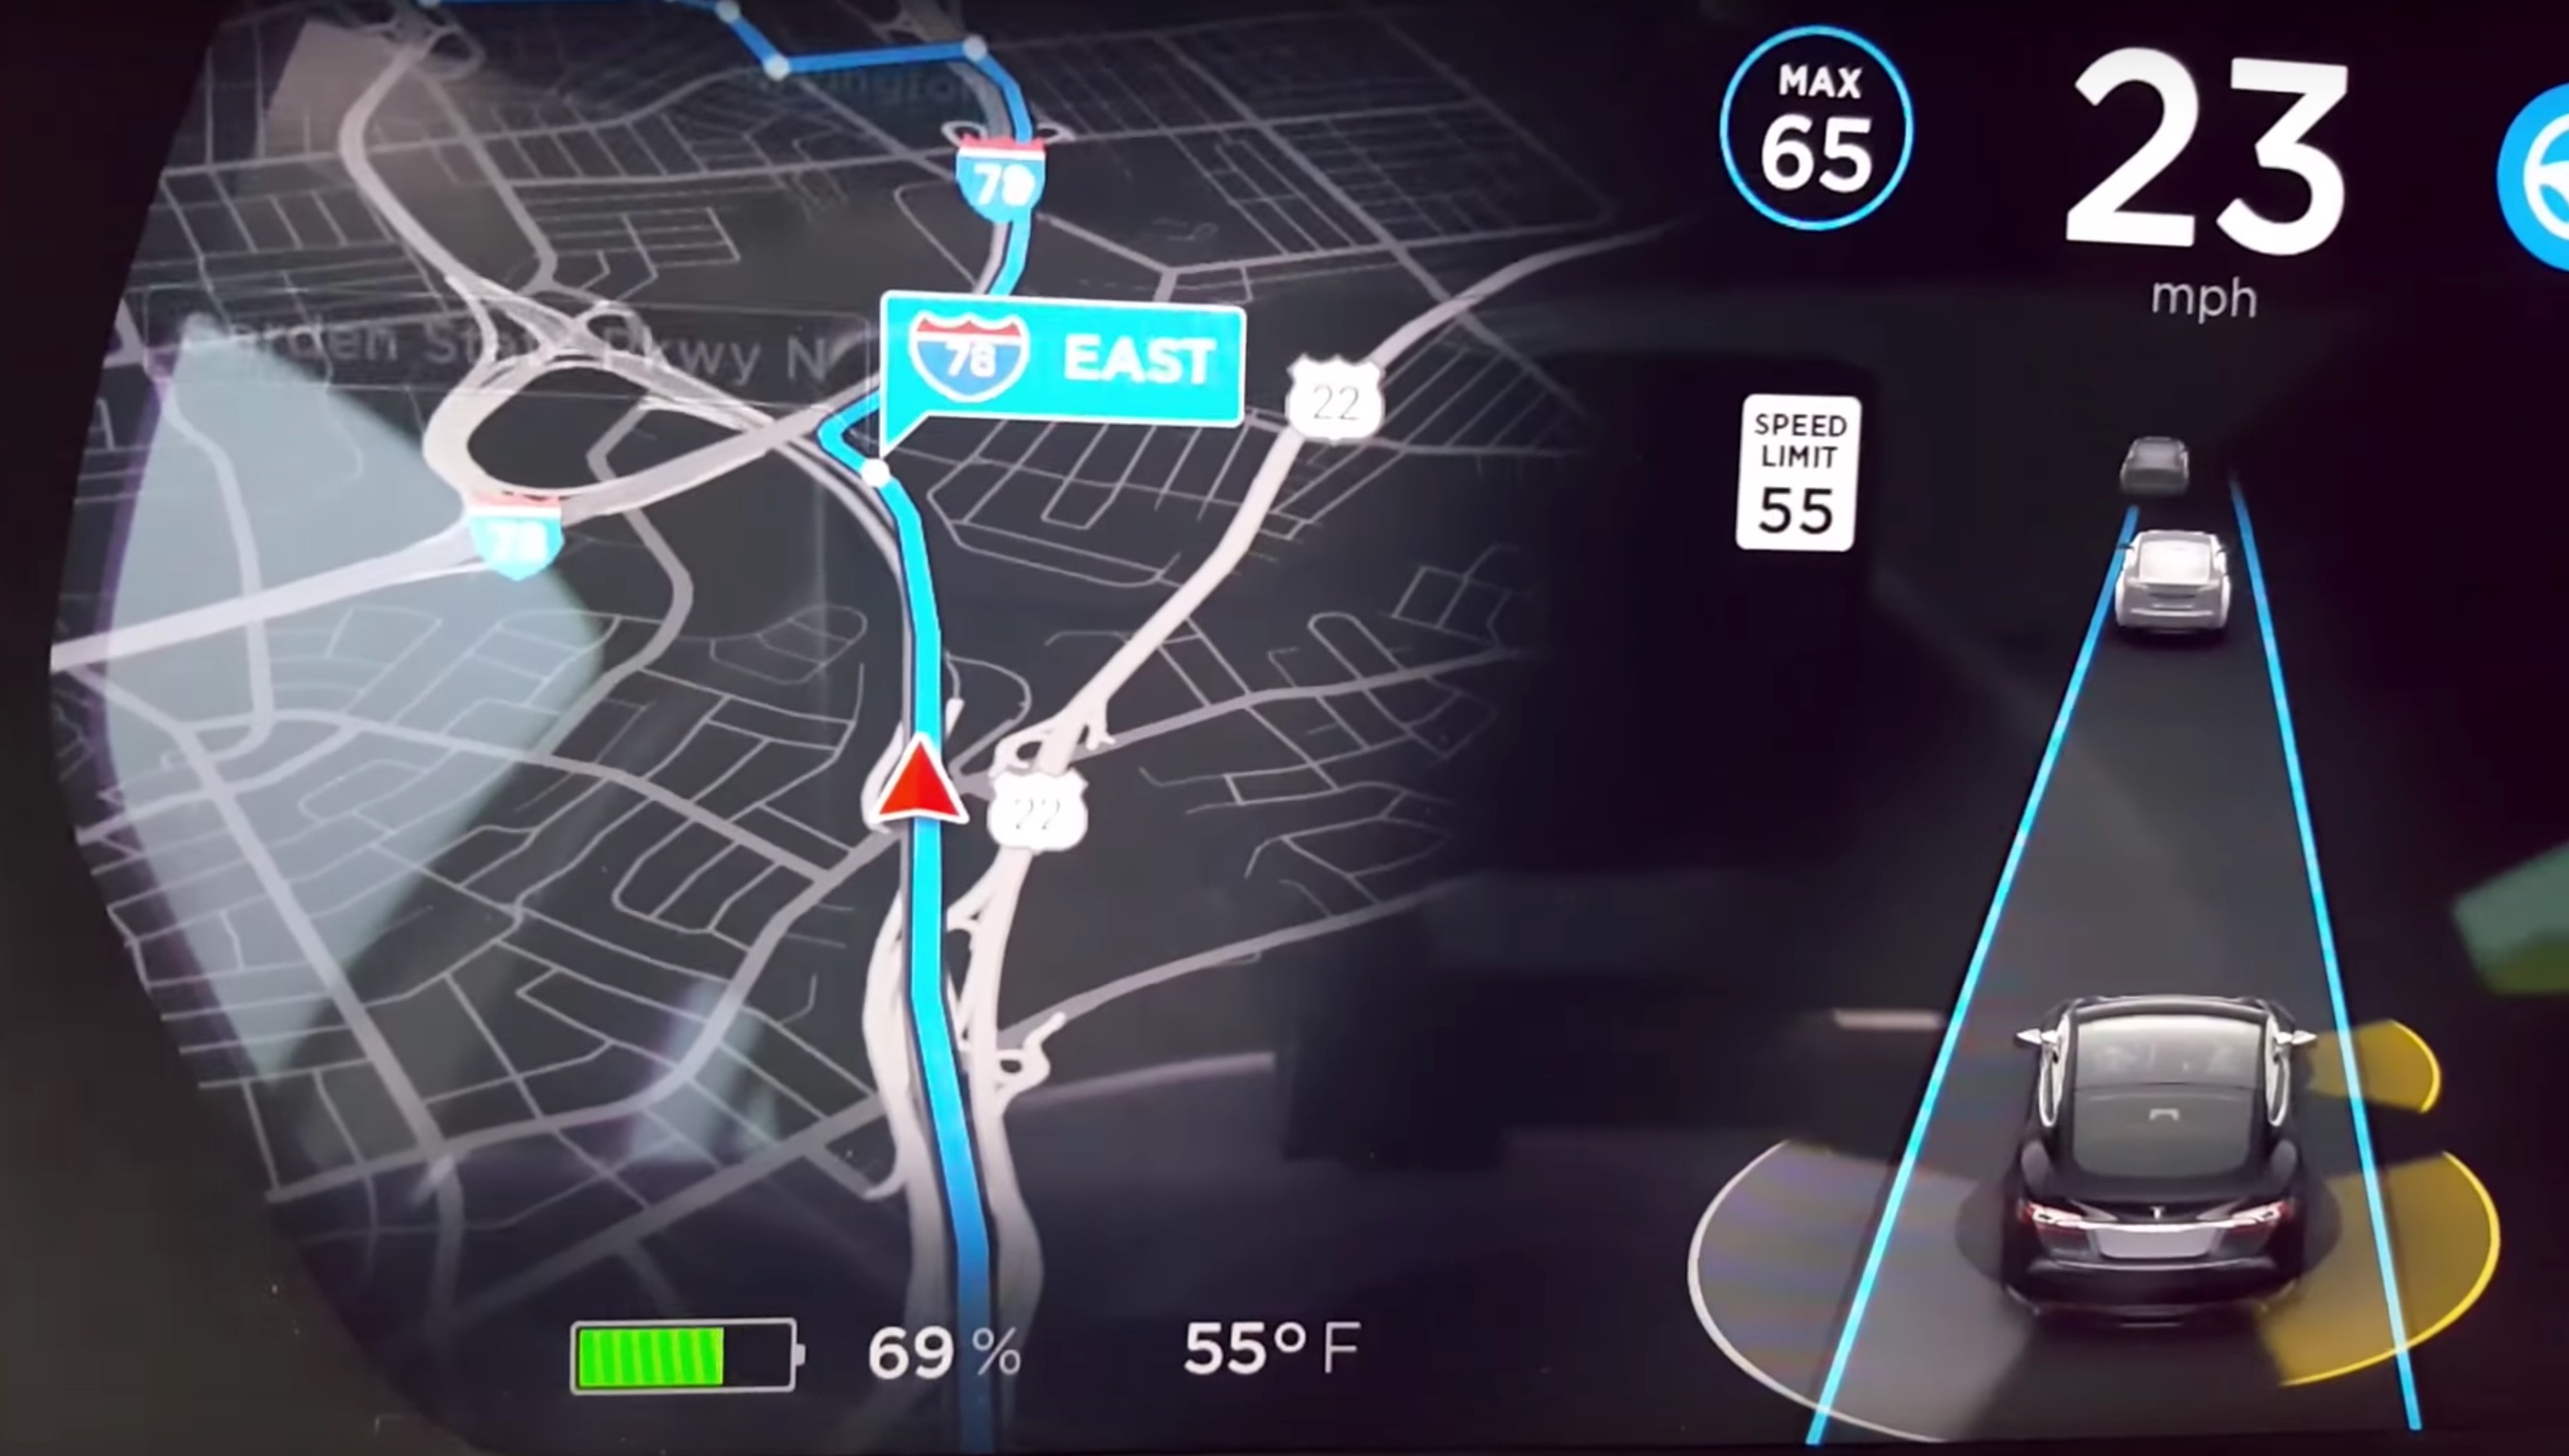 Tesla тестирует навигацию на уровне полосы движения в Китае, сотрудничая с Baidu Maps